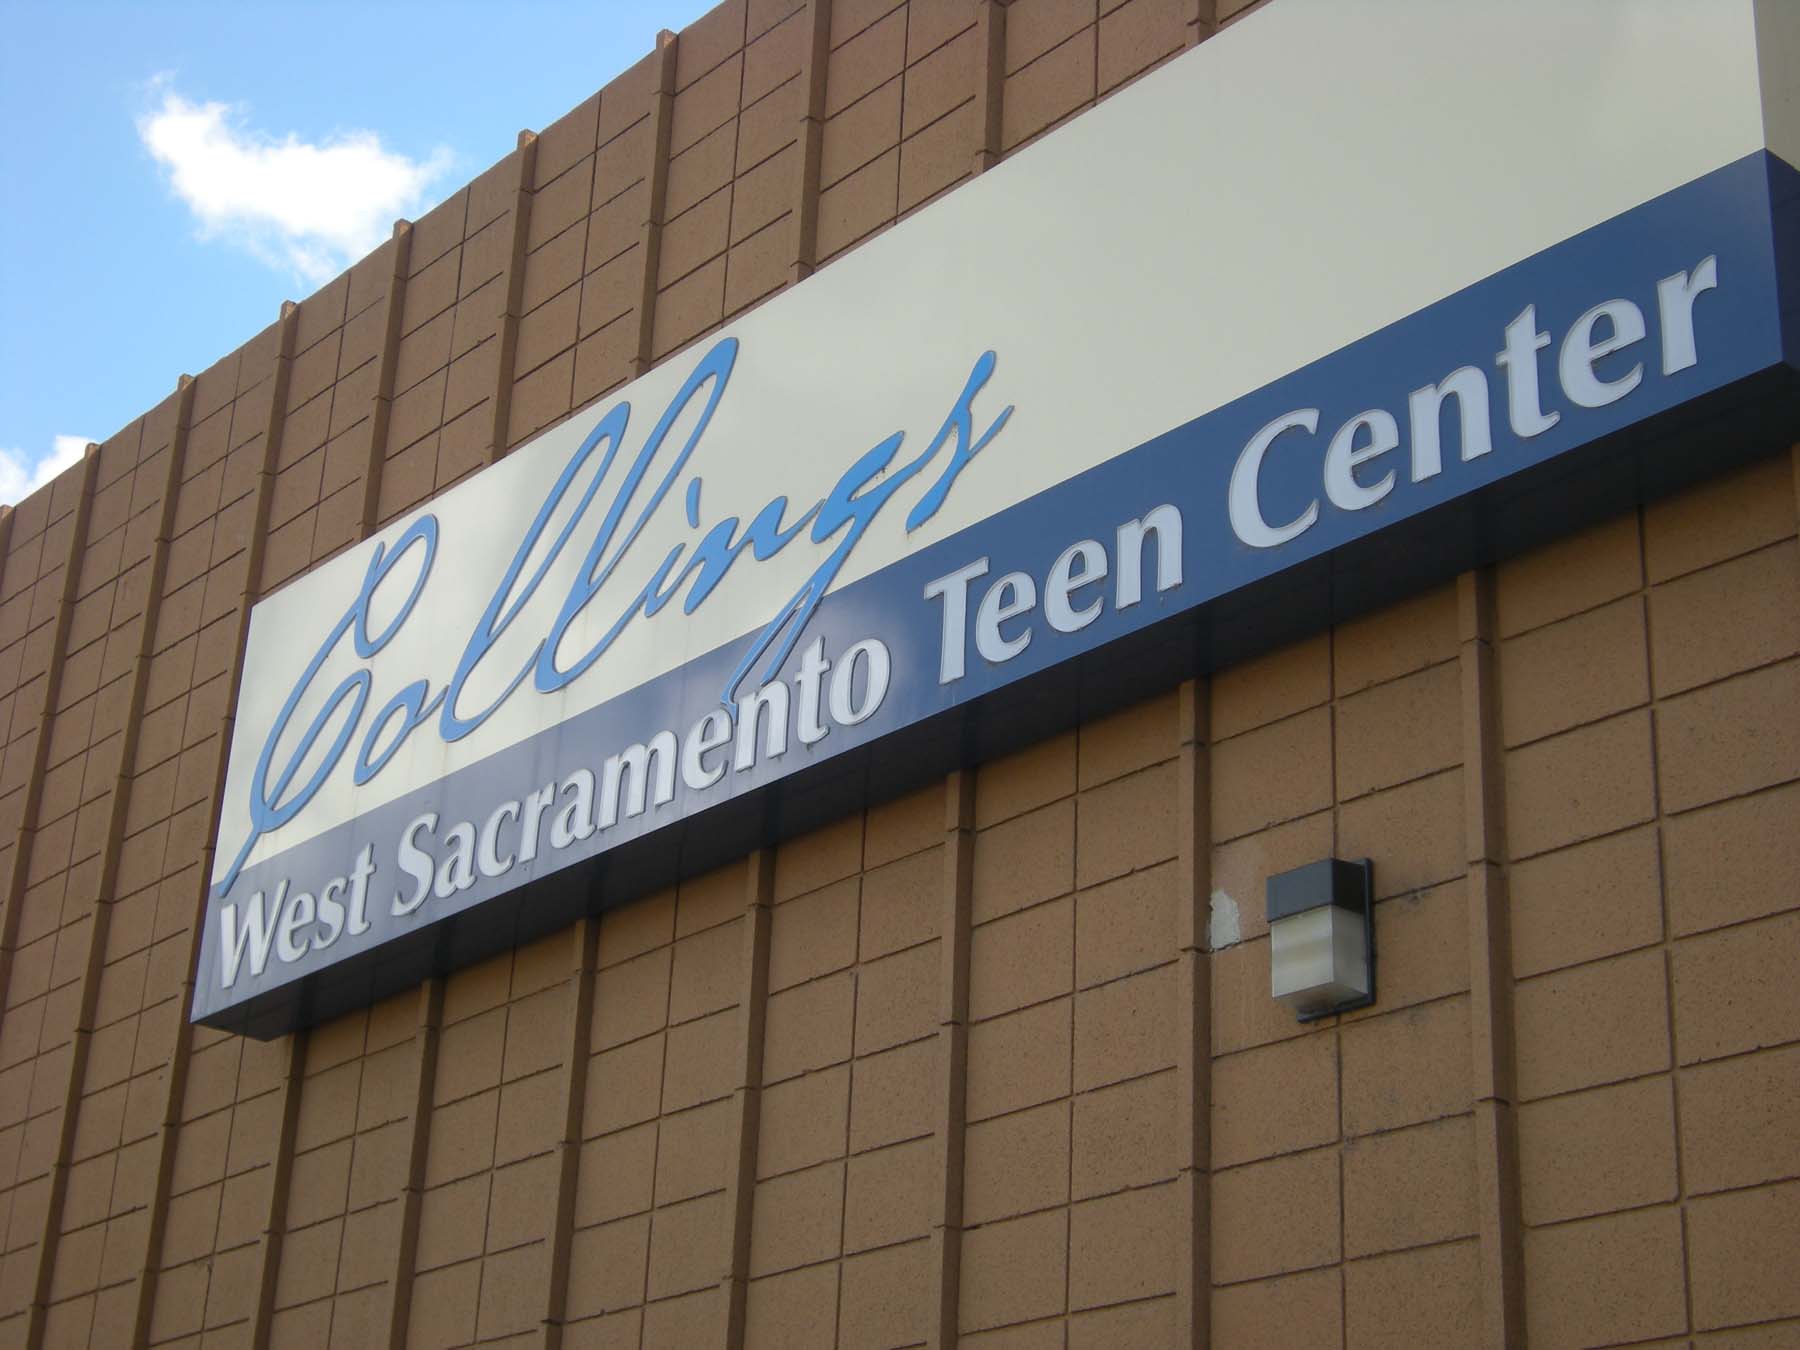 teen center